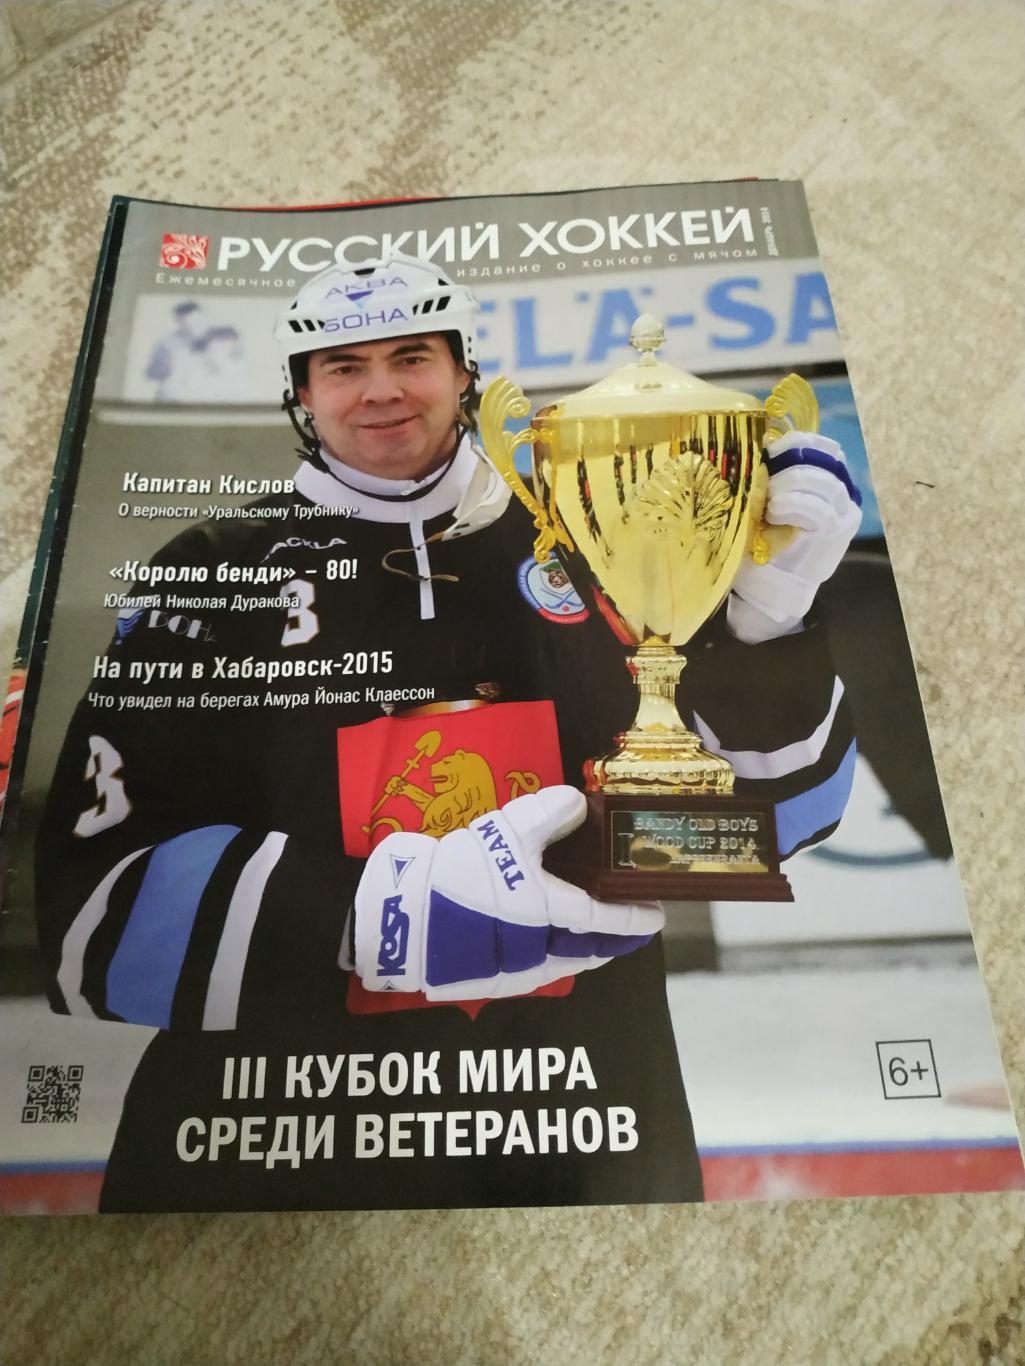 Журнал Русский хоккей декабрь 2014